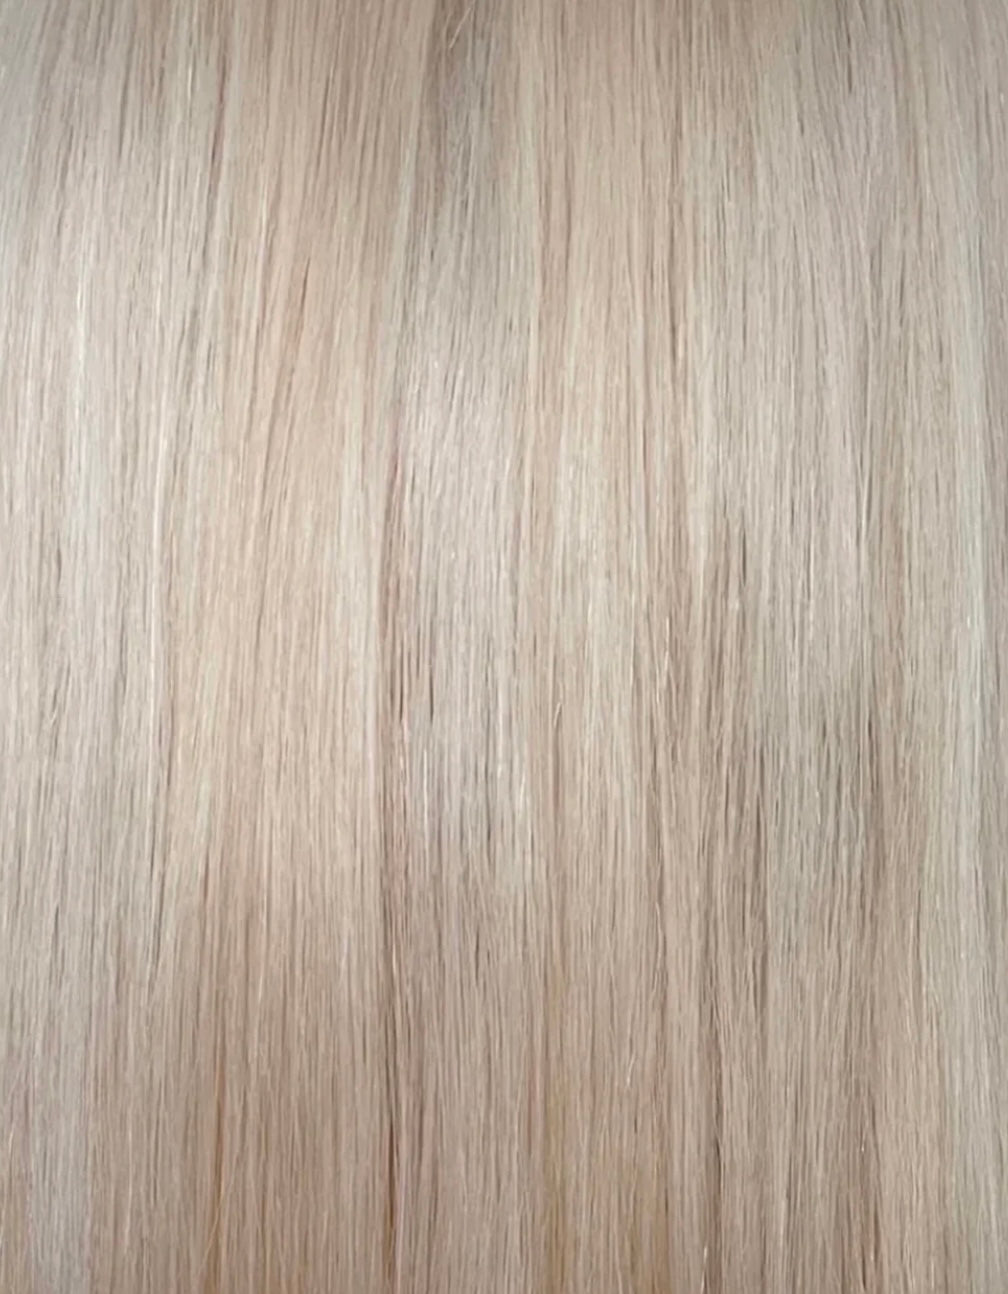 Custom colour - HD FULL LACE wig - 24” European hair - 20/20.5